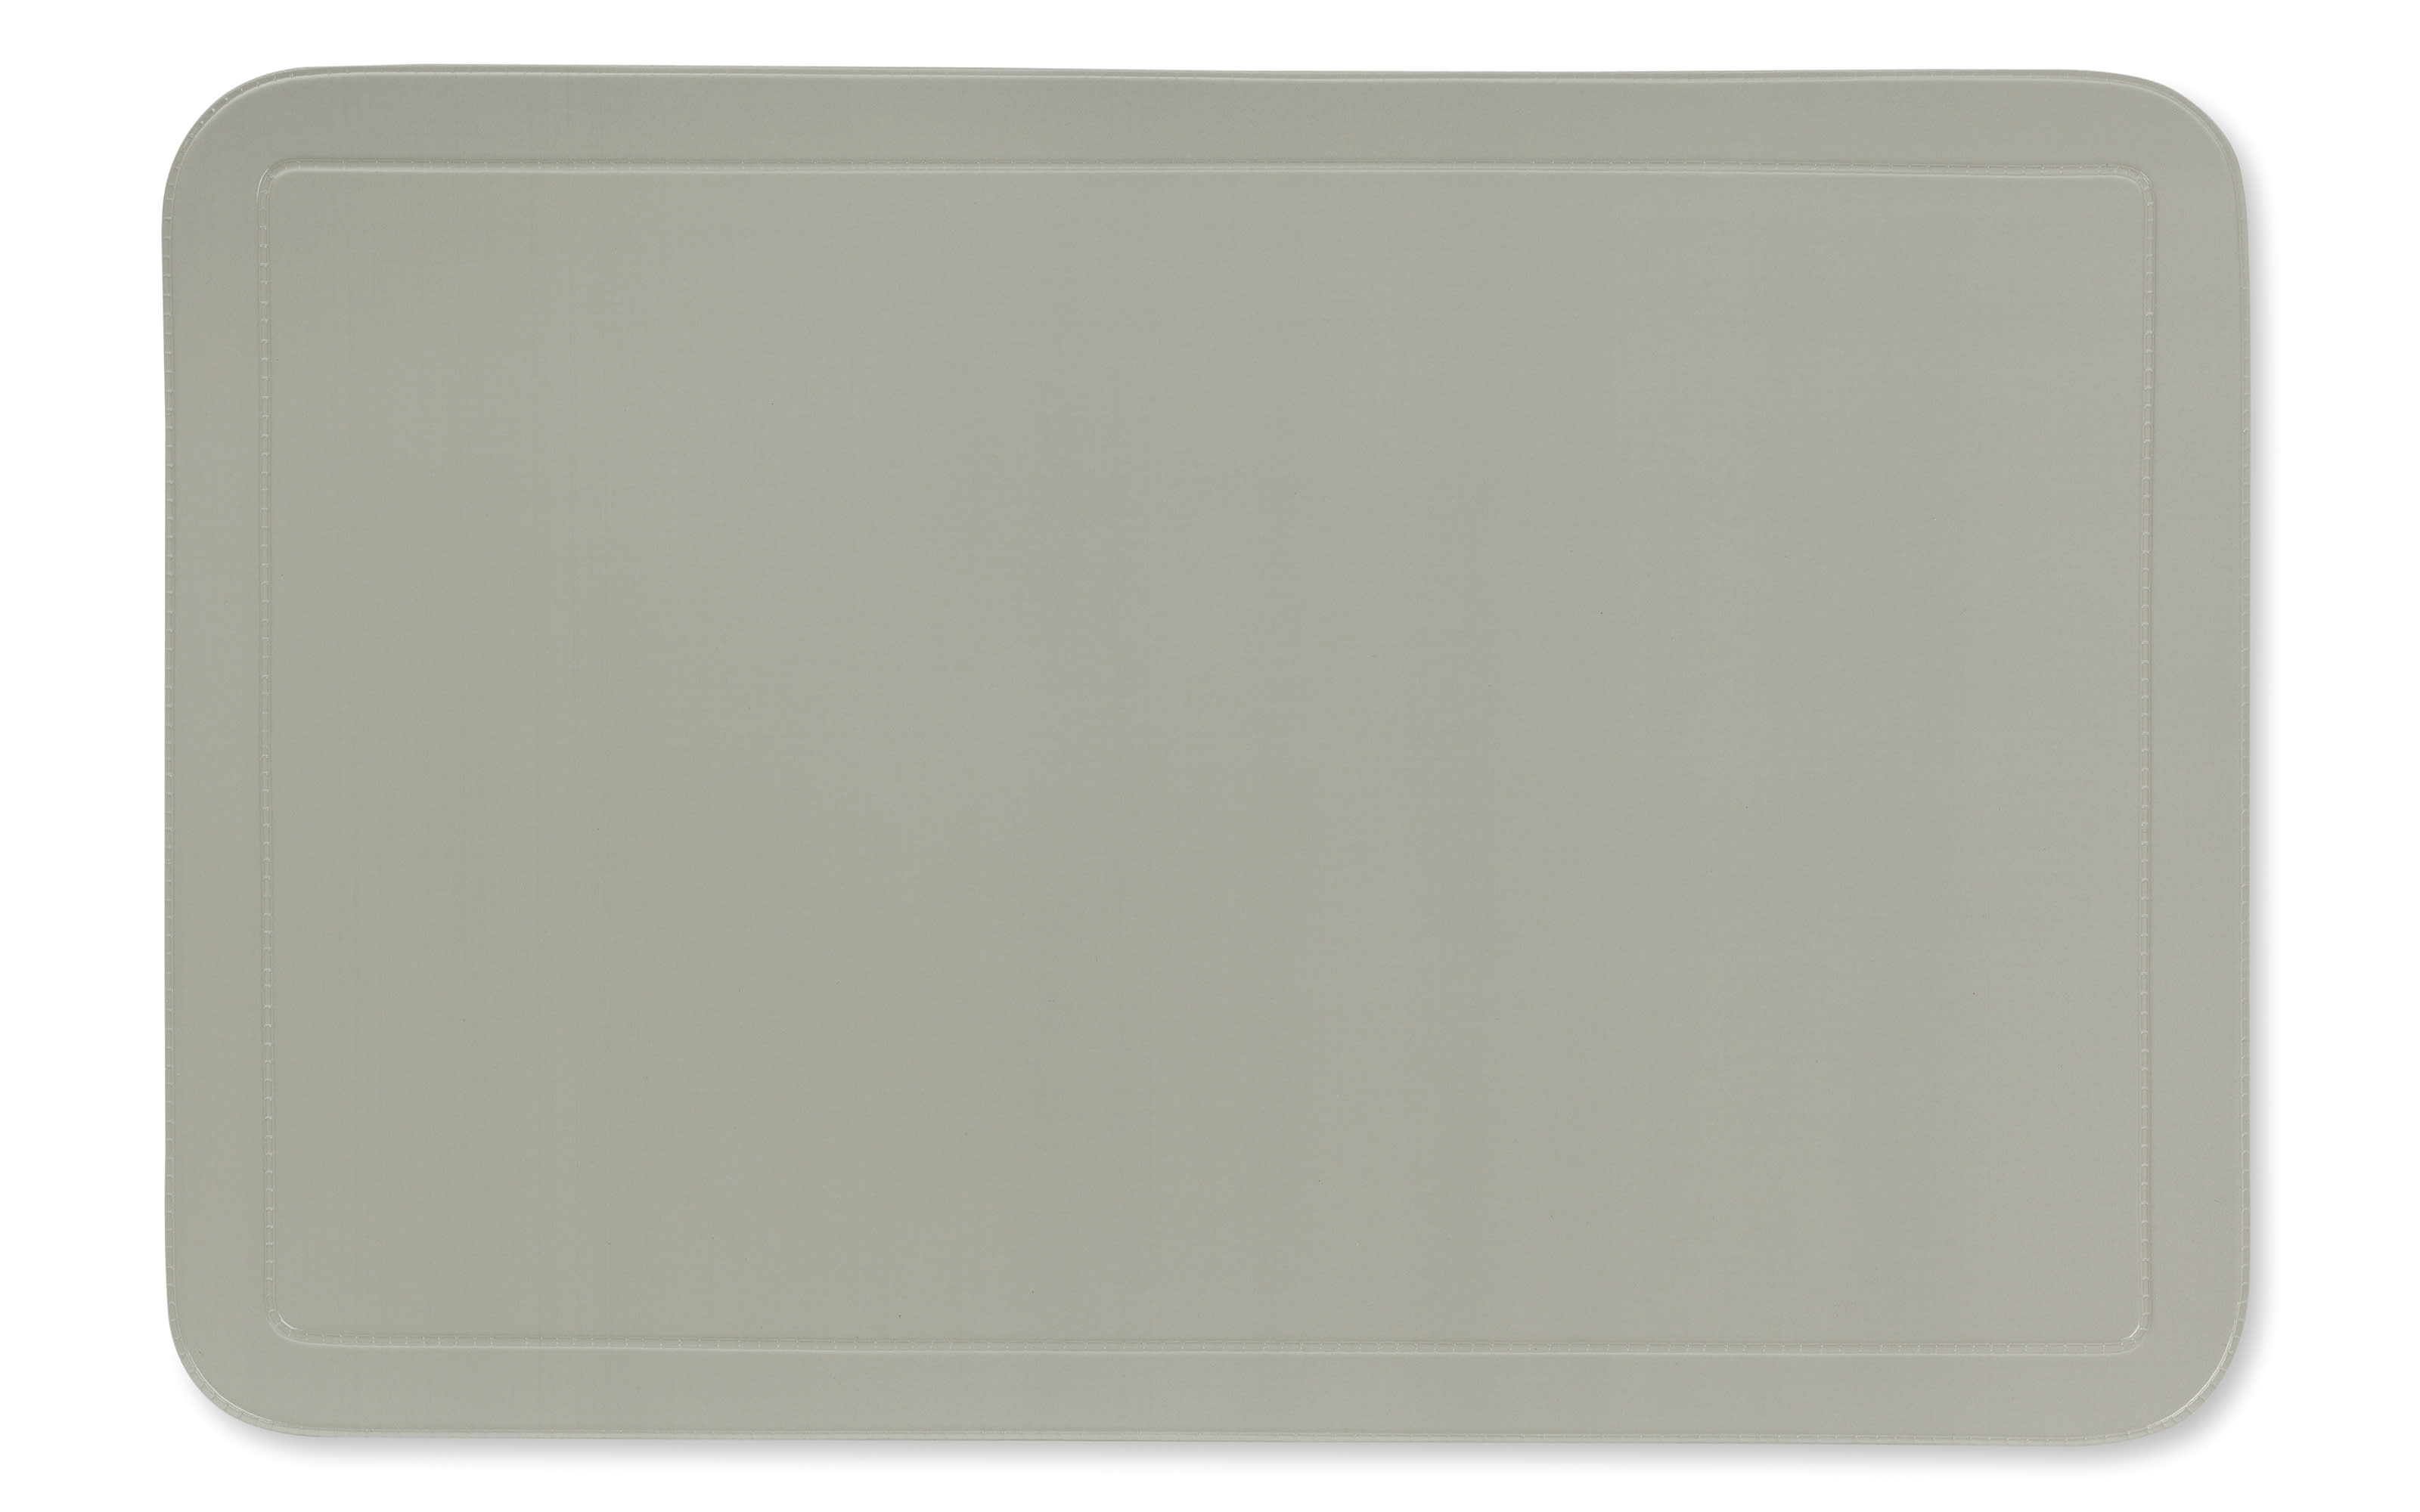 Tischset Uni in grau, 28.5 x 43.5 cm